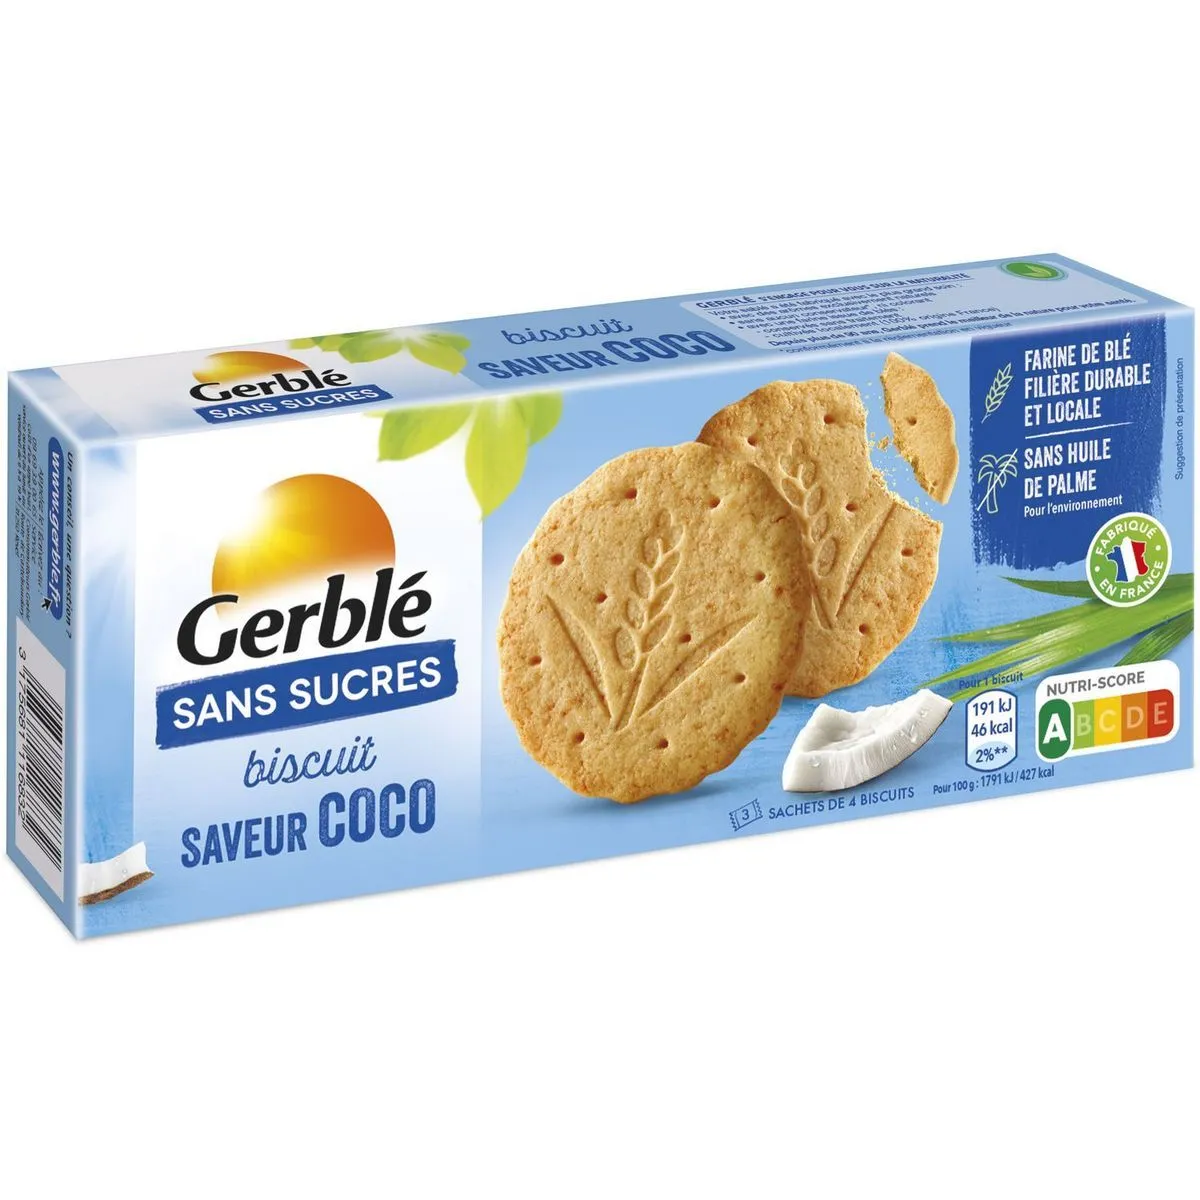 biscuits sans sucres saveur coco gerblé